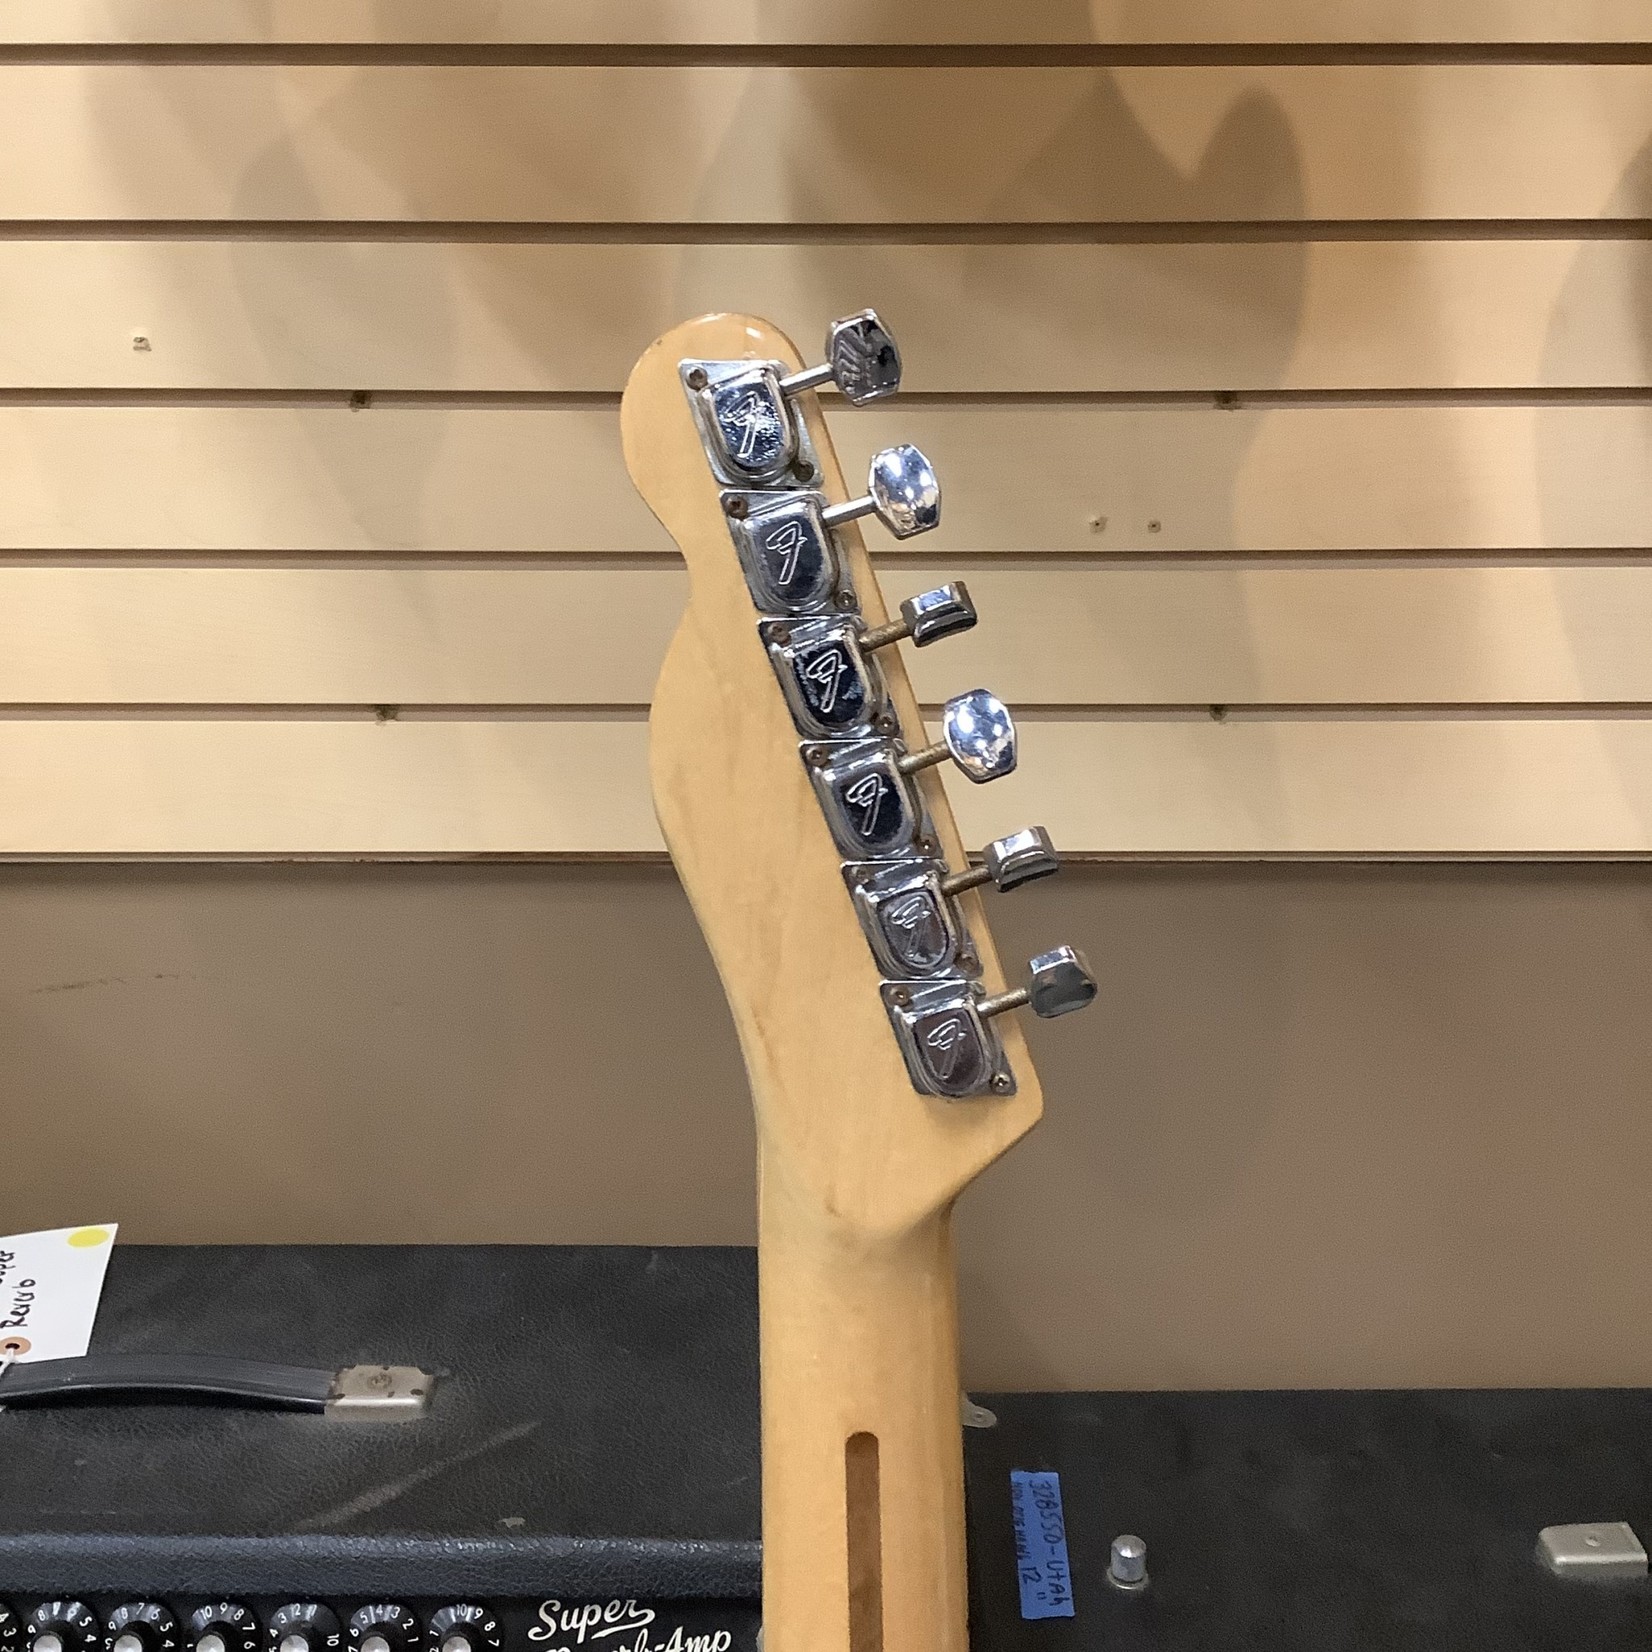 Fender 1974 Fender Telecaster Custom Natural